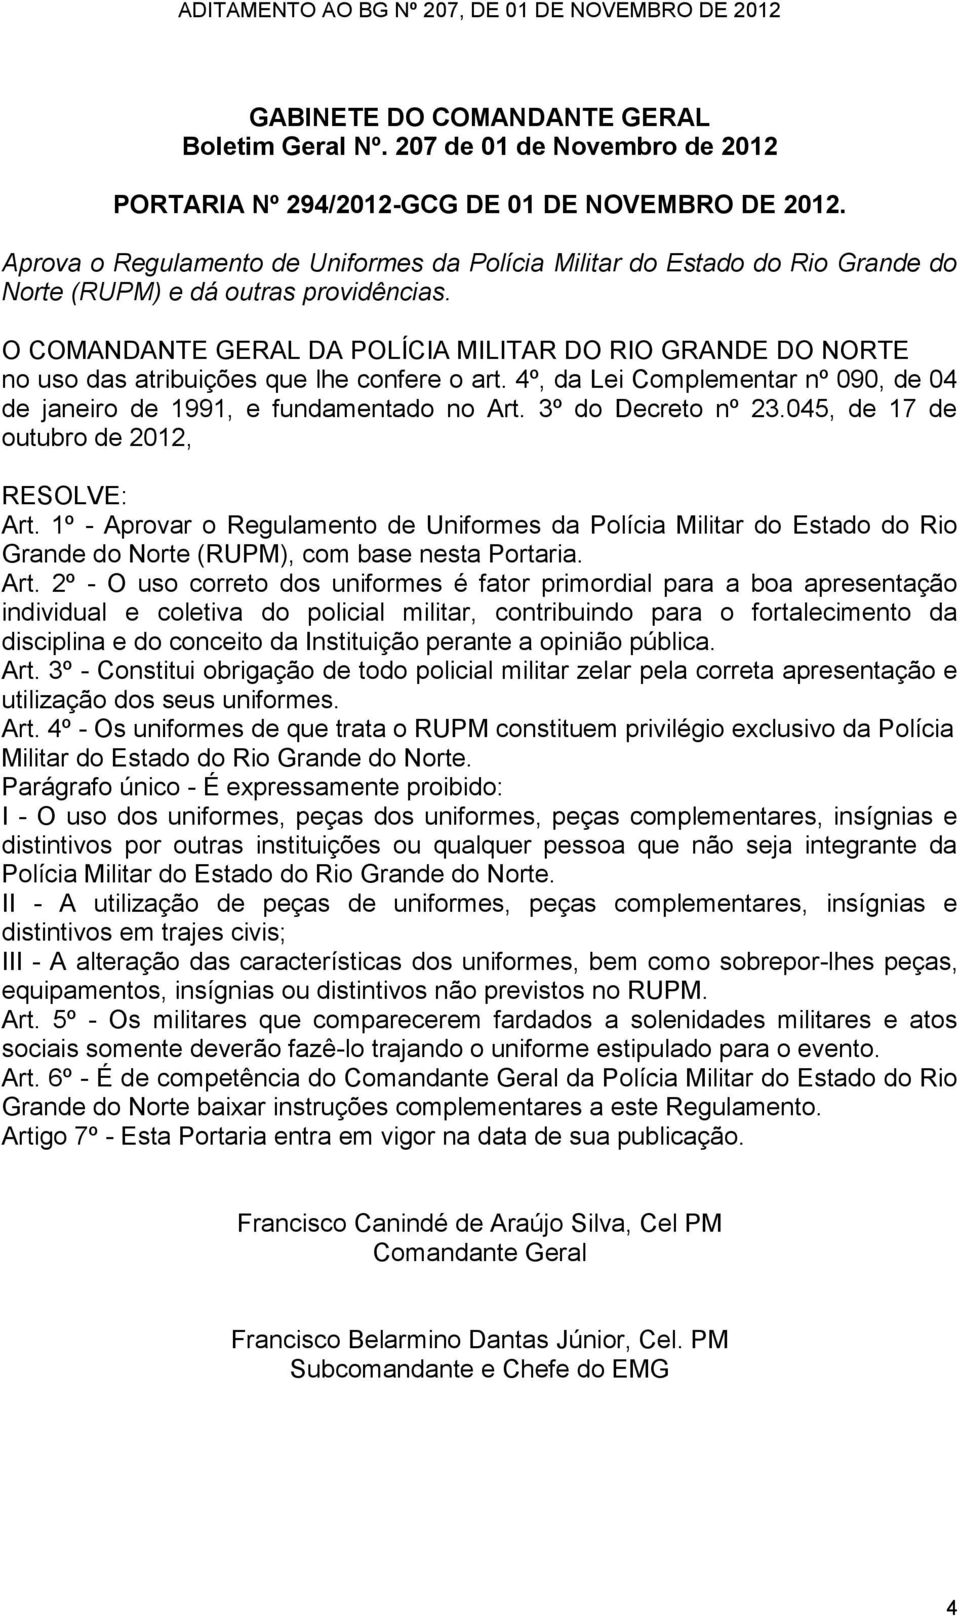 O COMANDANTE GERAL DA POLÍCIA MILITAR DO RIO GRANDE DO NORTE no uso das atribuições que lhe confere o art. 4º, da Lei Complementar nº 090, de 04 de janeiro de 1991, e fundamentado no Art.